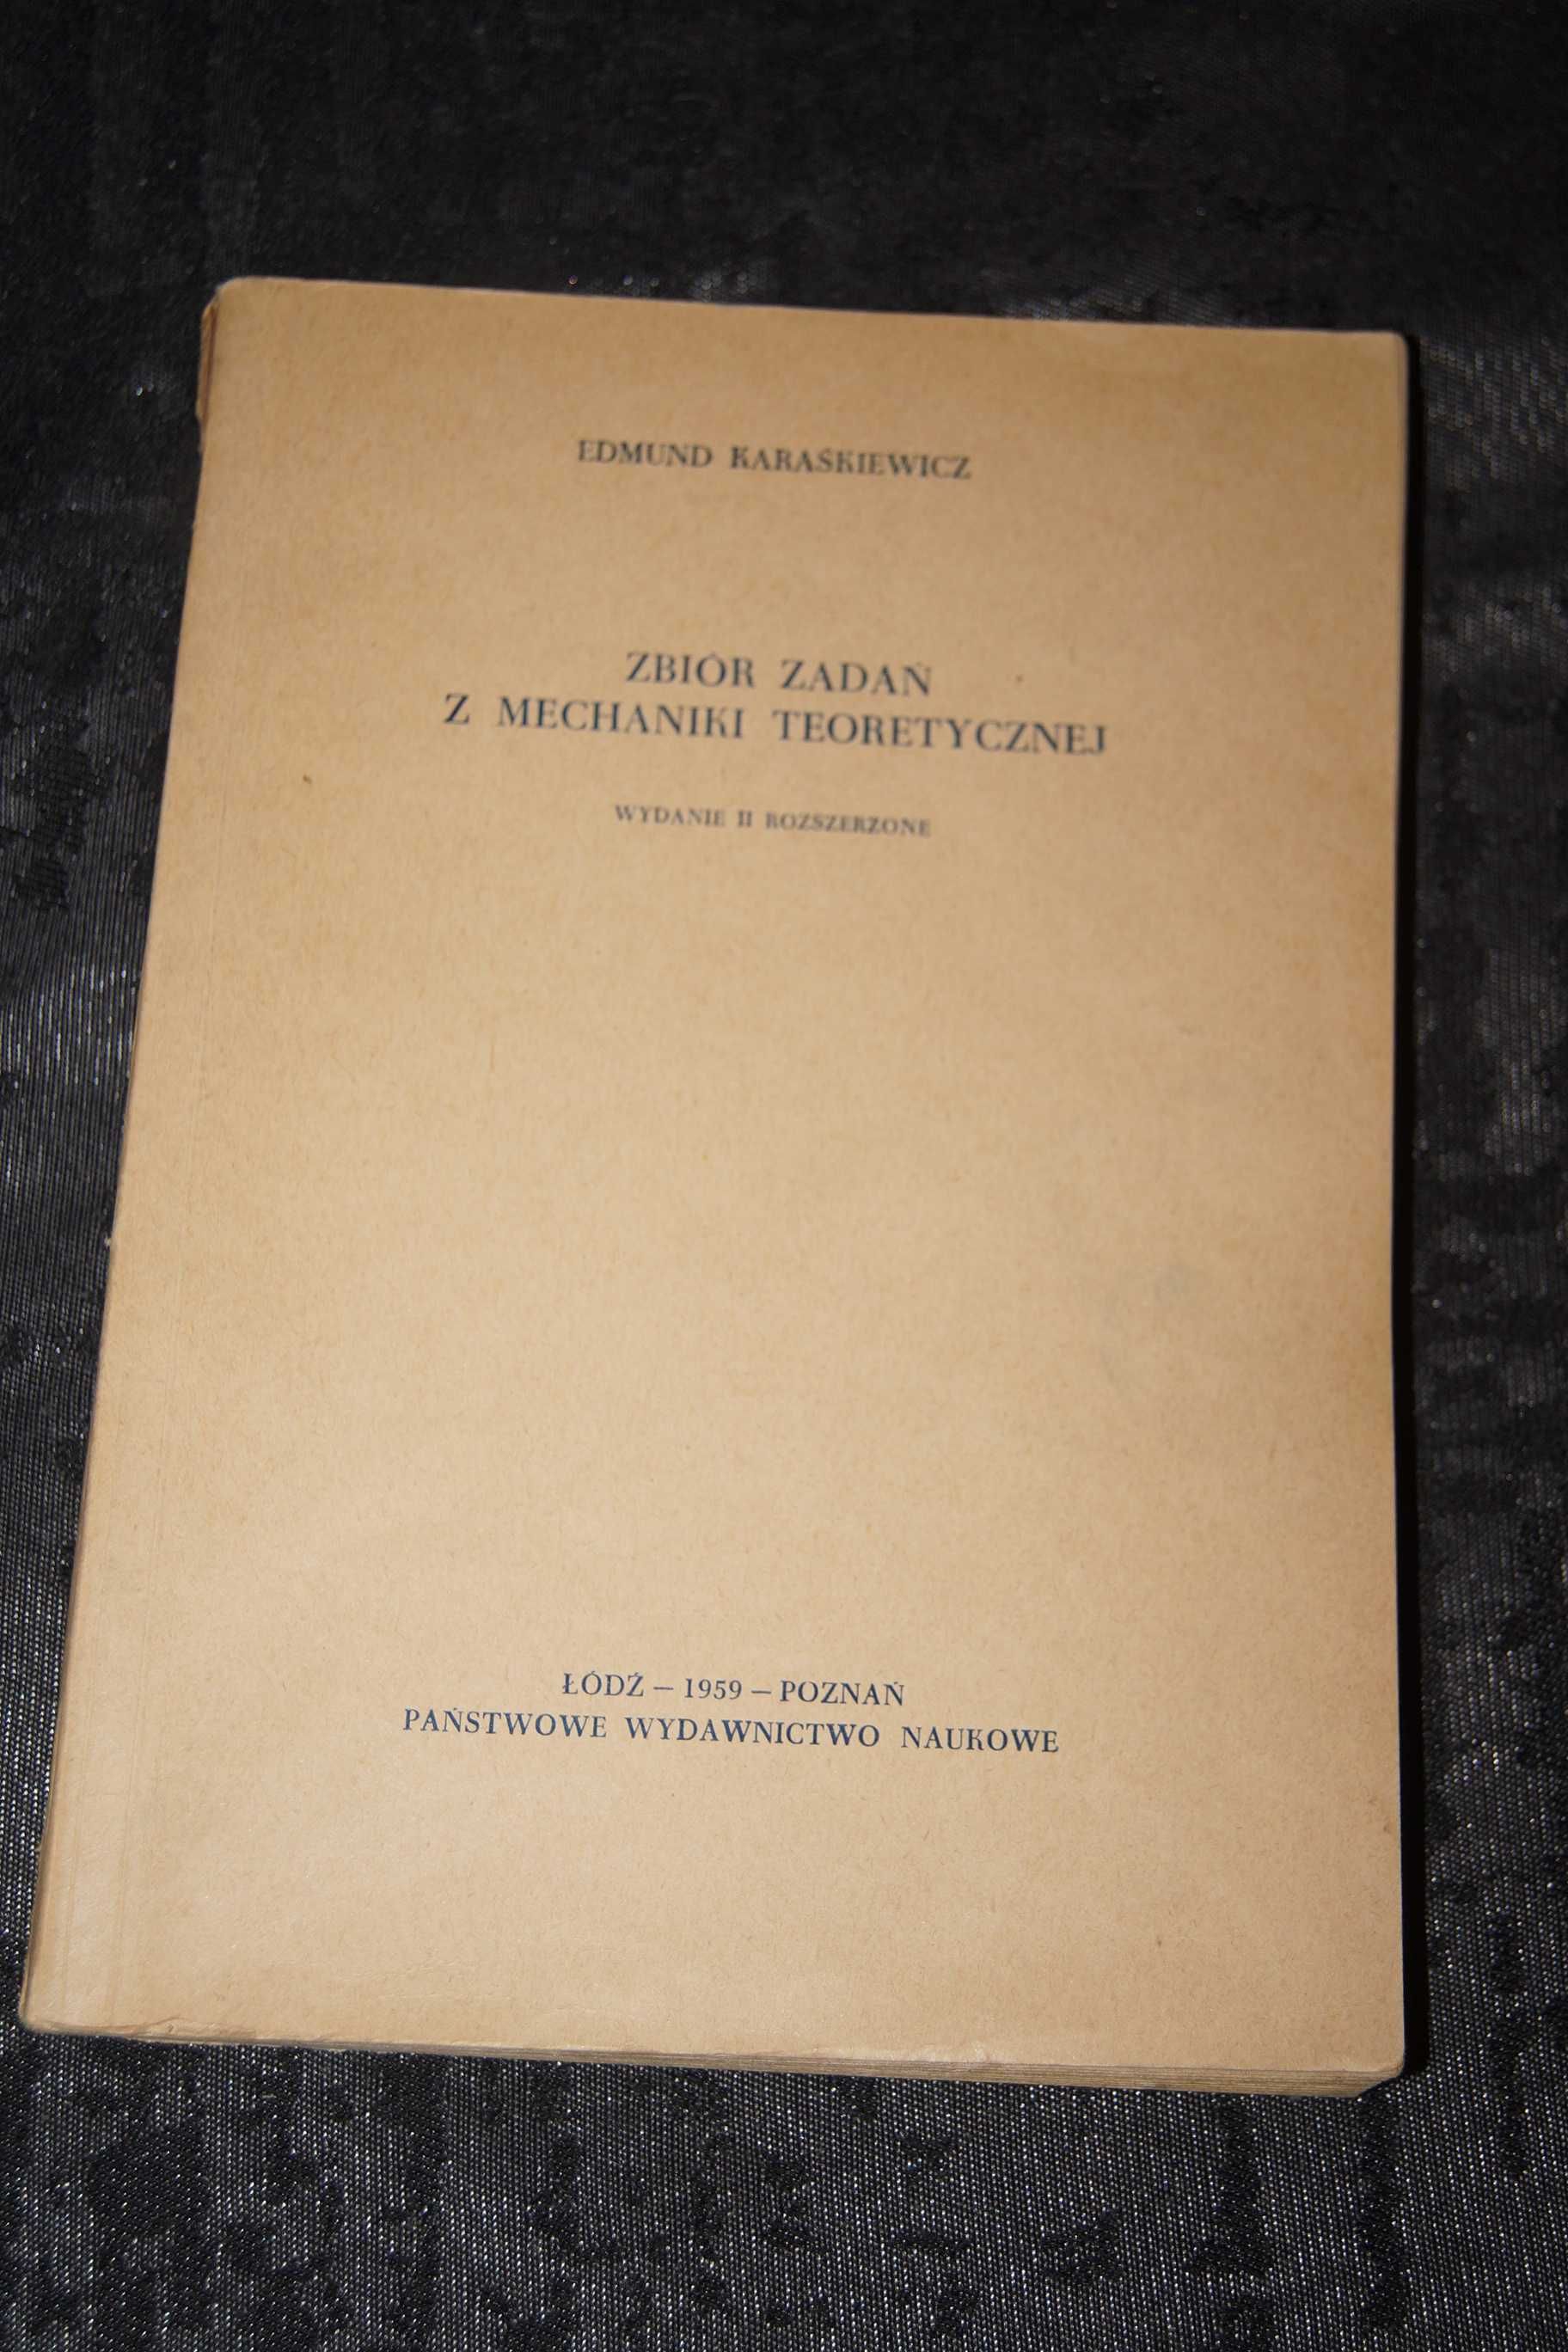 Zbiór zadań z mechaniki teoretycznej Edmund Karaśkiewicz